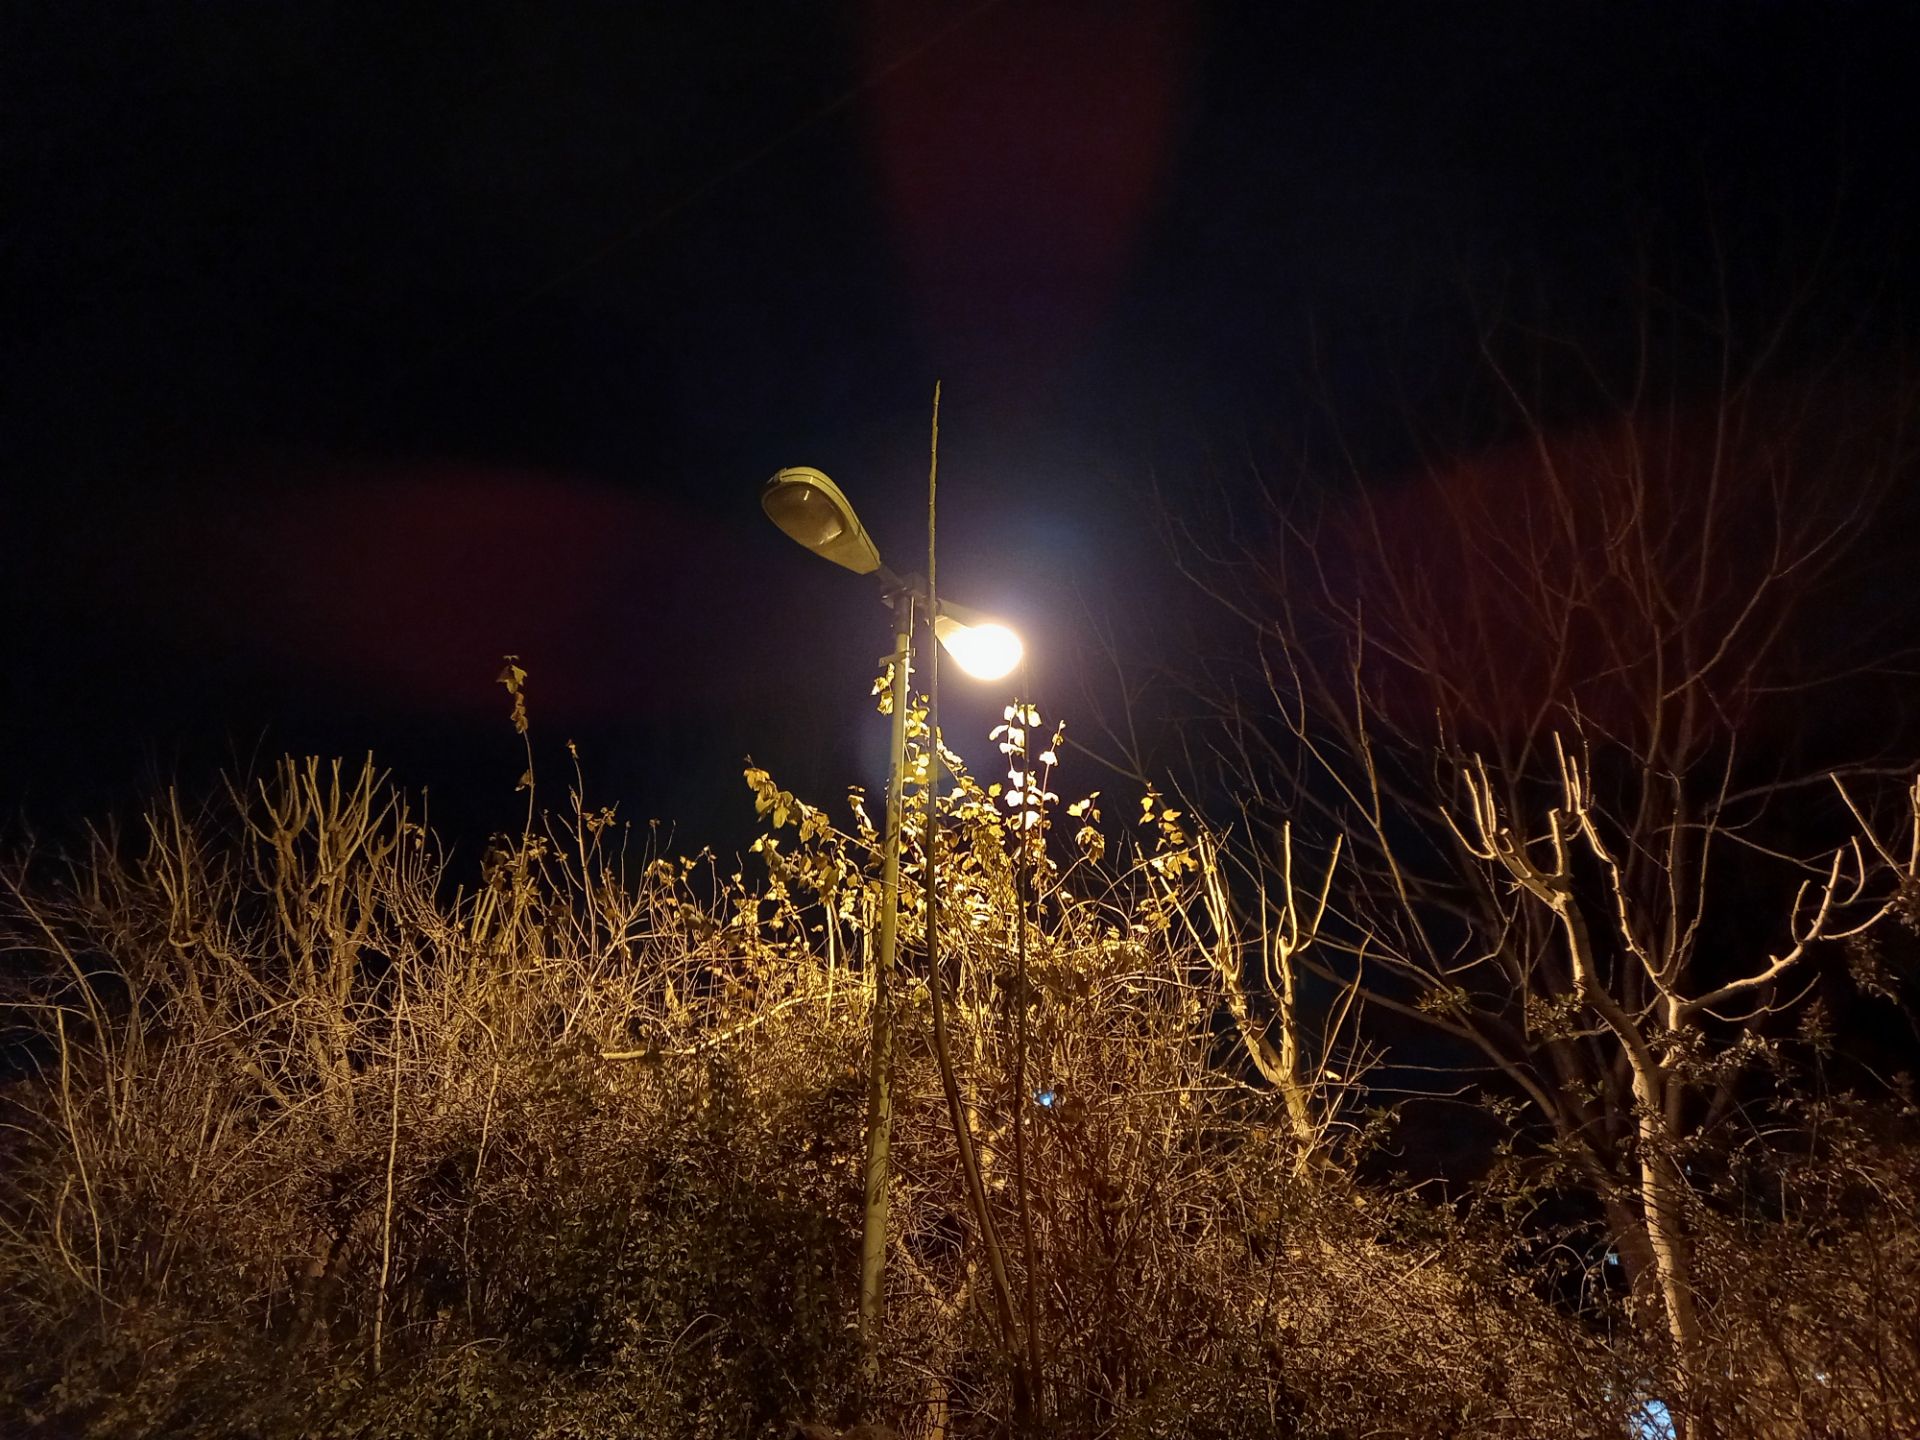 نمونه عکس دوربین اصلی گلکسی A12 سامسونگ در تاریکی شب - تابیدن نور به درخت